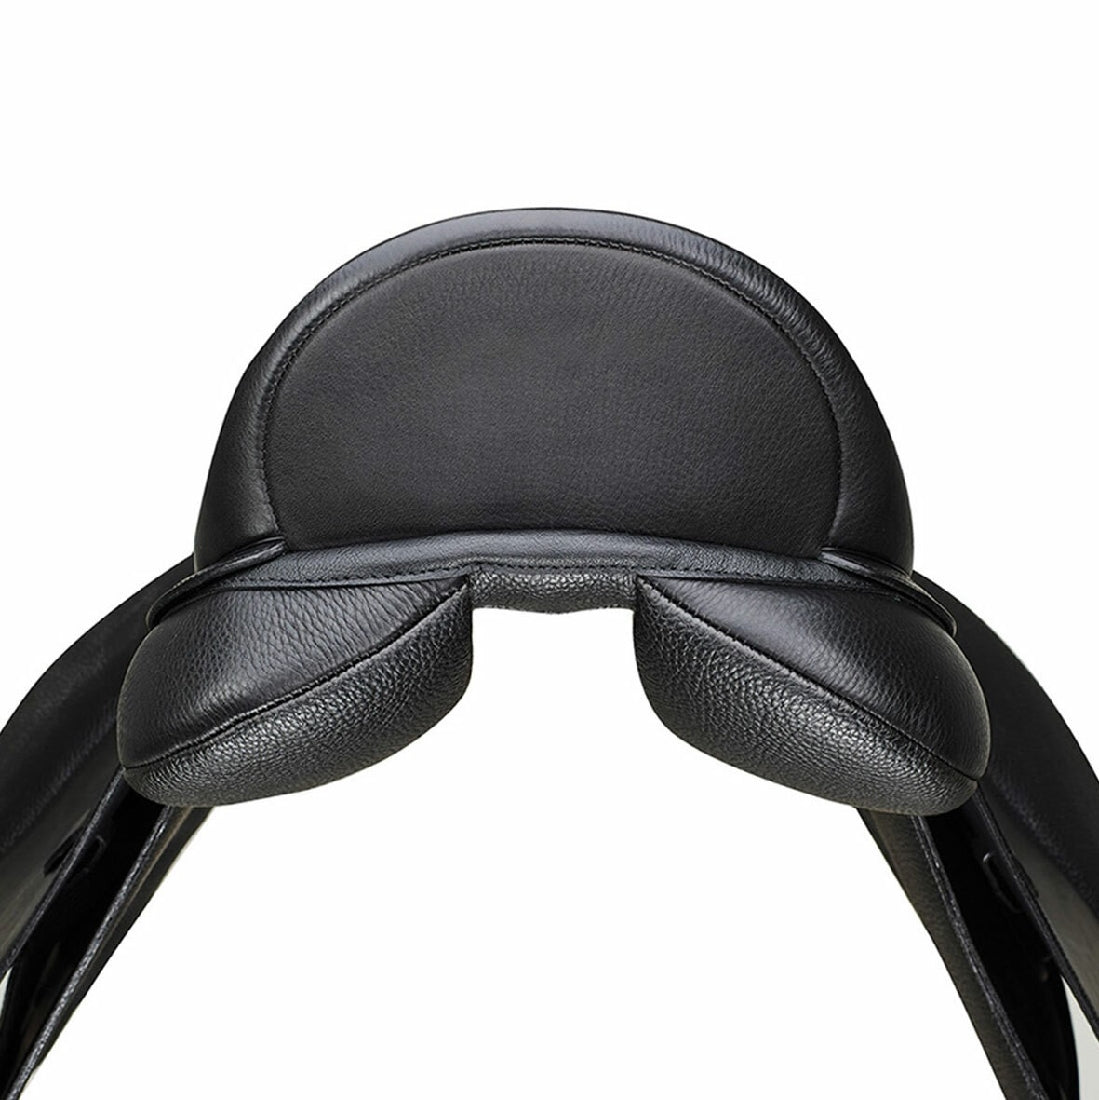 Arena Saddles black dressage saddle, close-up on leather padding.